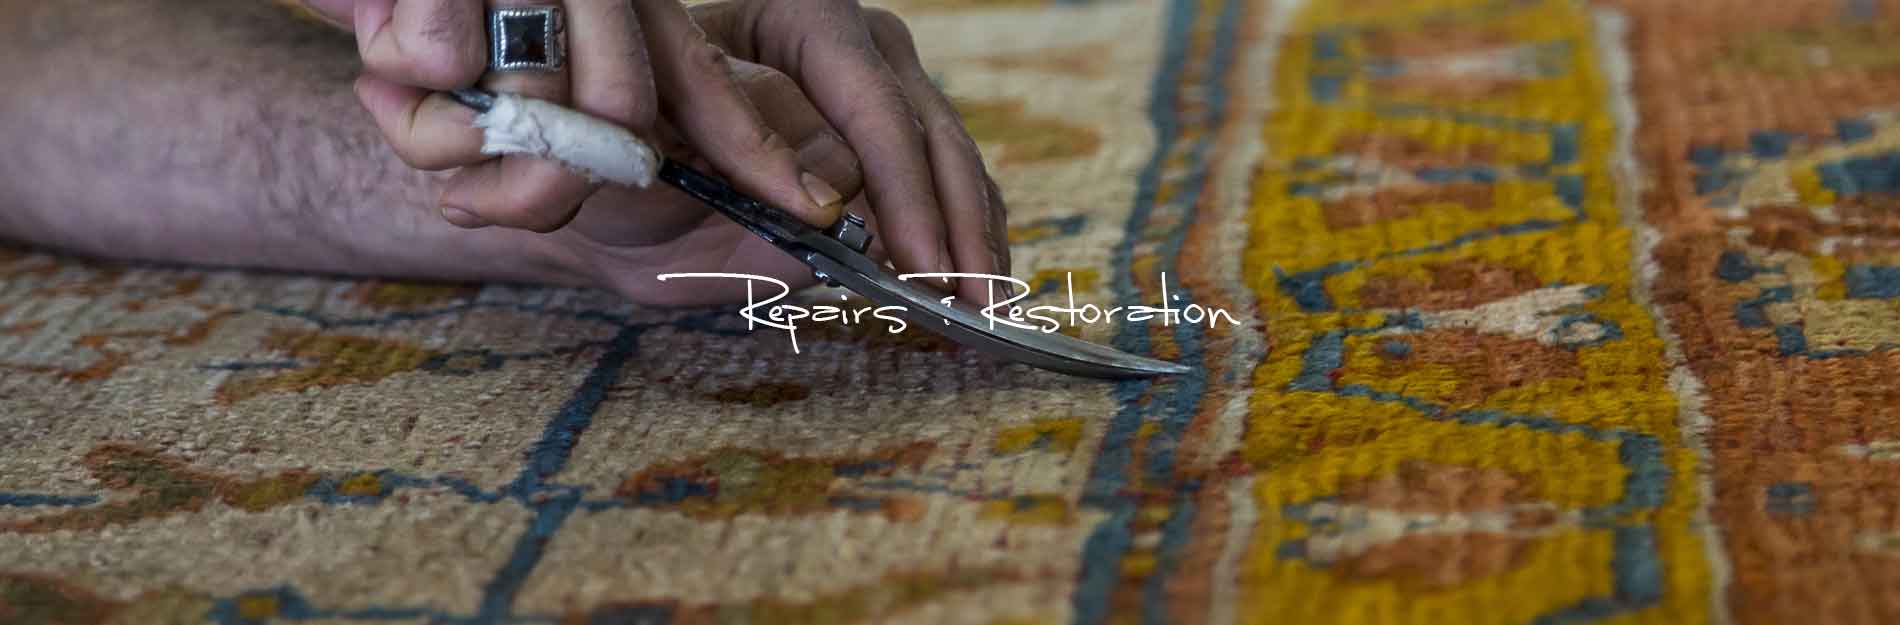 Antique Carpet Restoration Oriental Rug Repair in Dallas